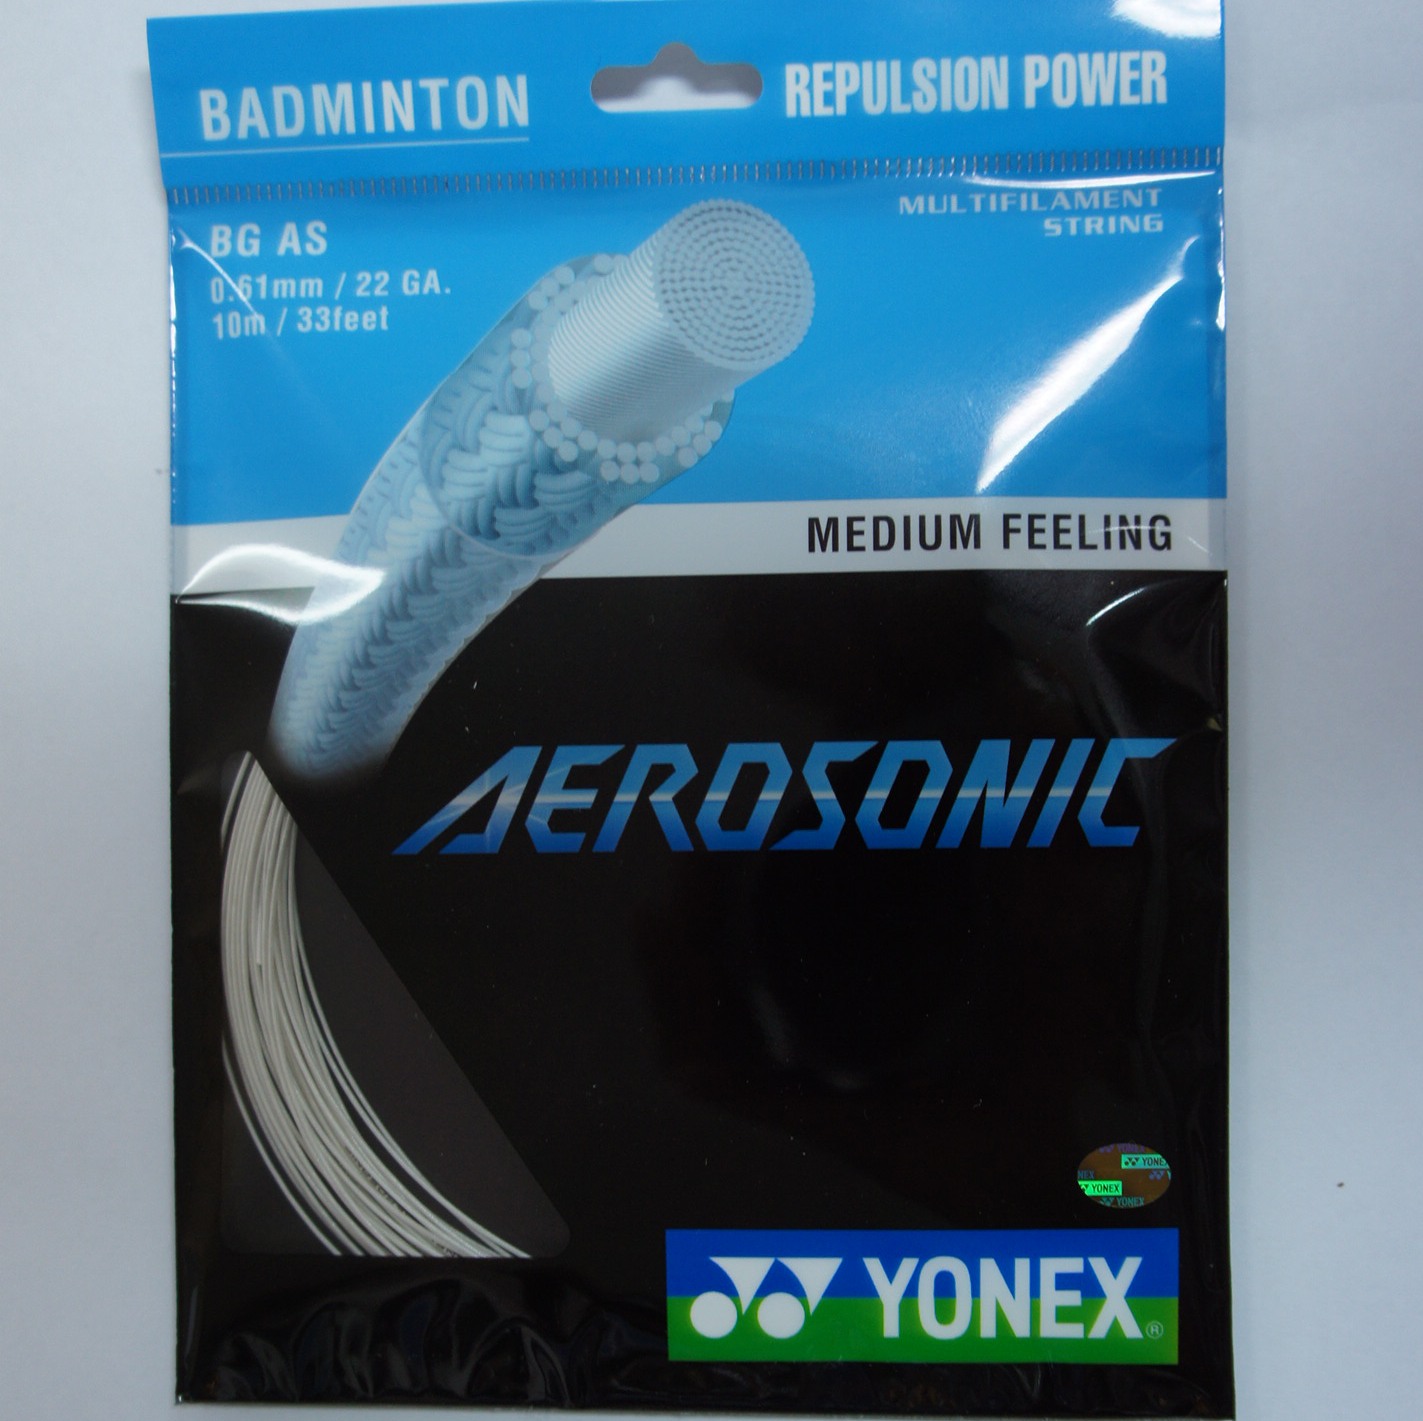 YONEX BG AS Aerosonic Badminton String (2 Packs)